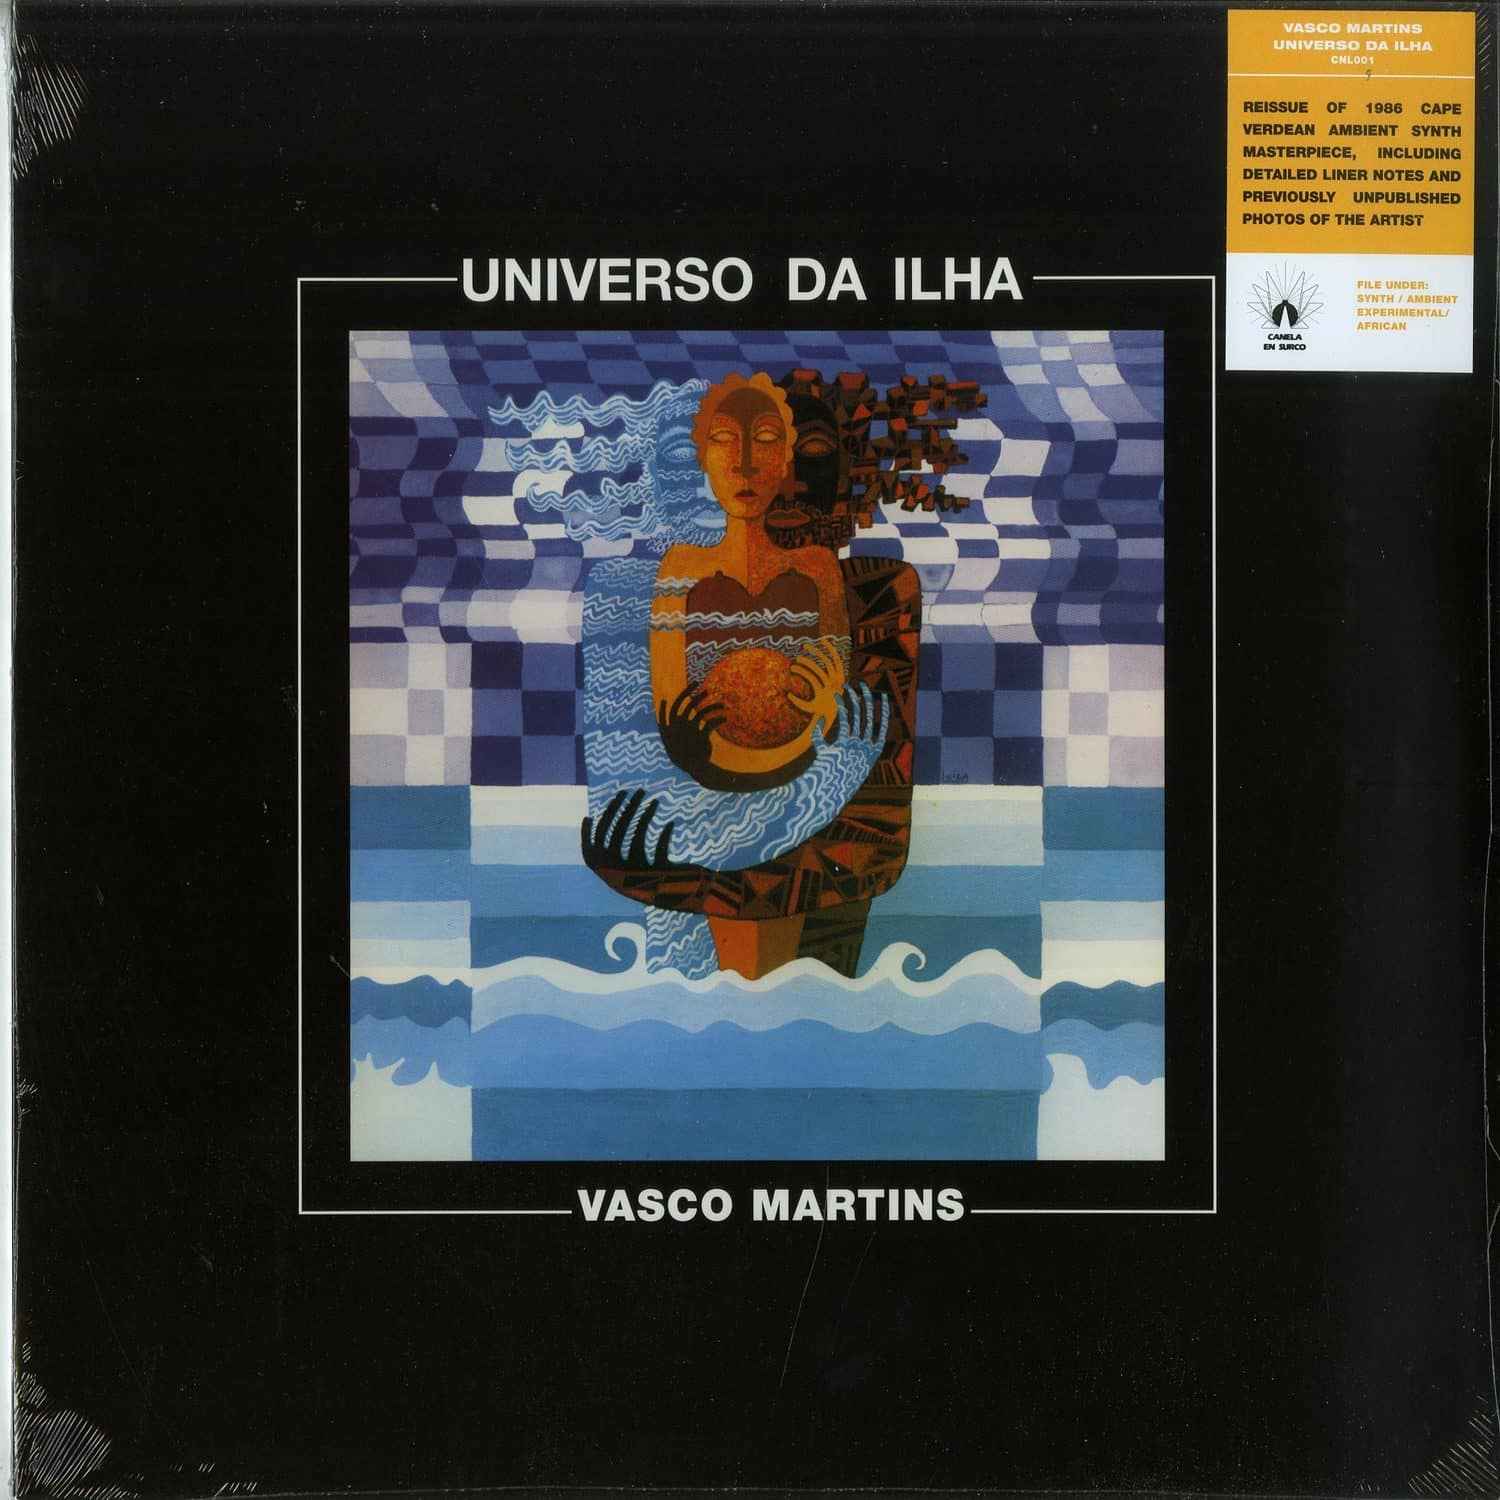 Vasco Martins - UNIVERSO DA ILHA 